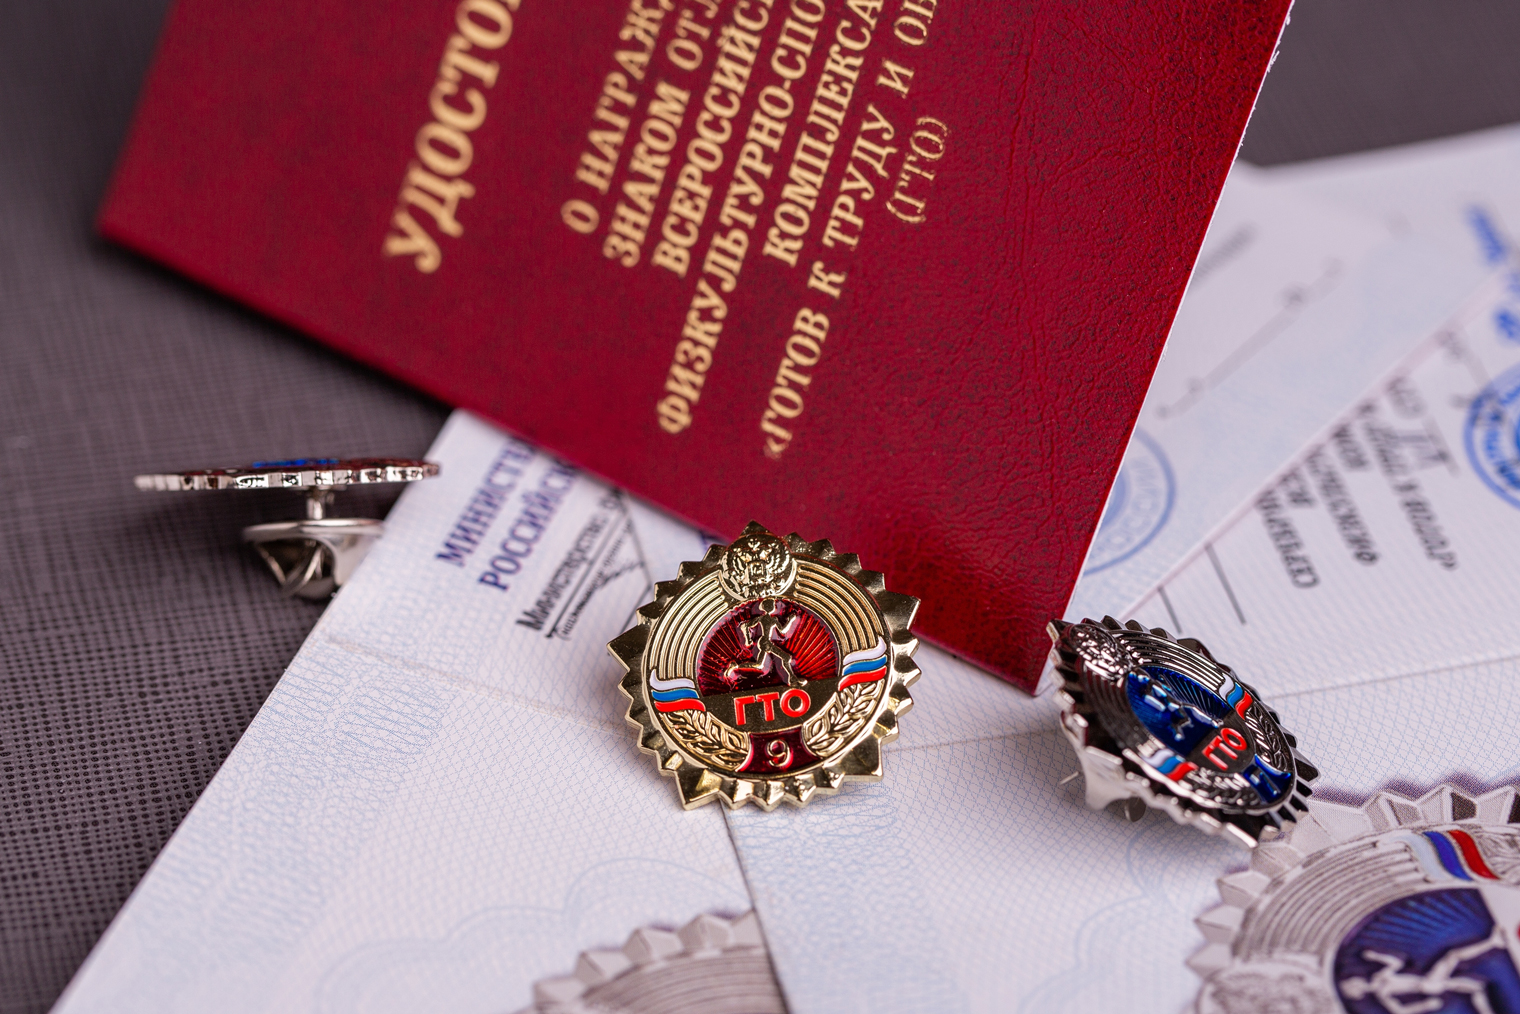 Удостоверение о награждении золотым знаком отличия выдано Министерством спорта Российской Федерации. Фотография: fortton / Shutterstock / FOTODOM